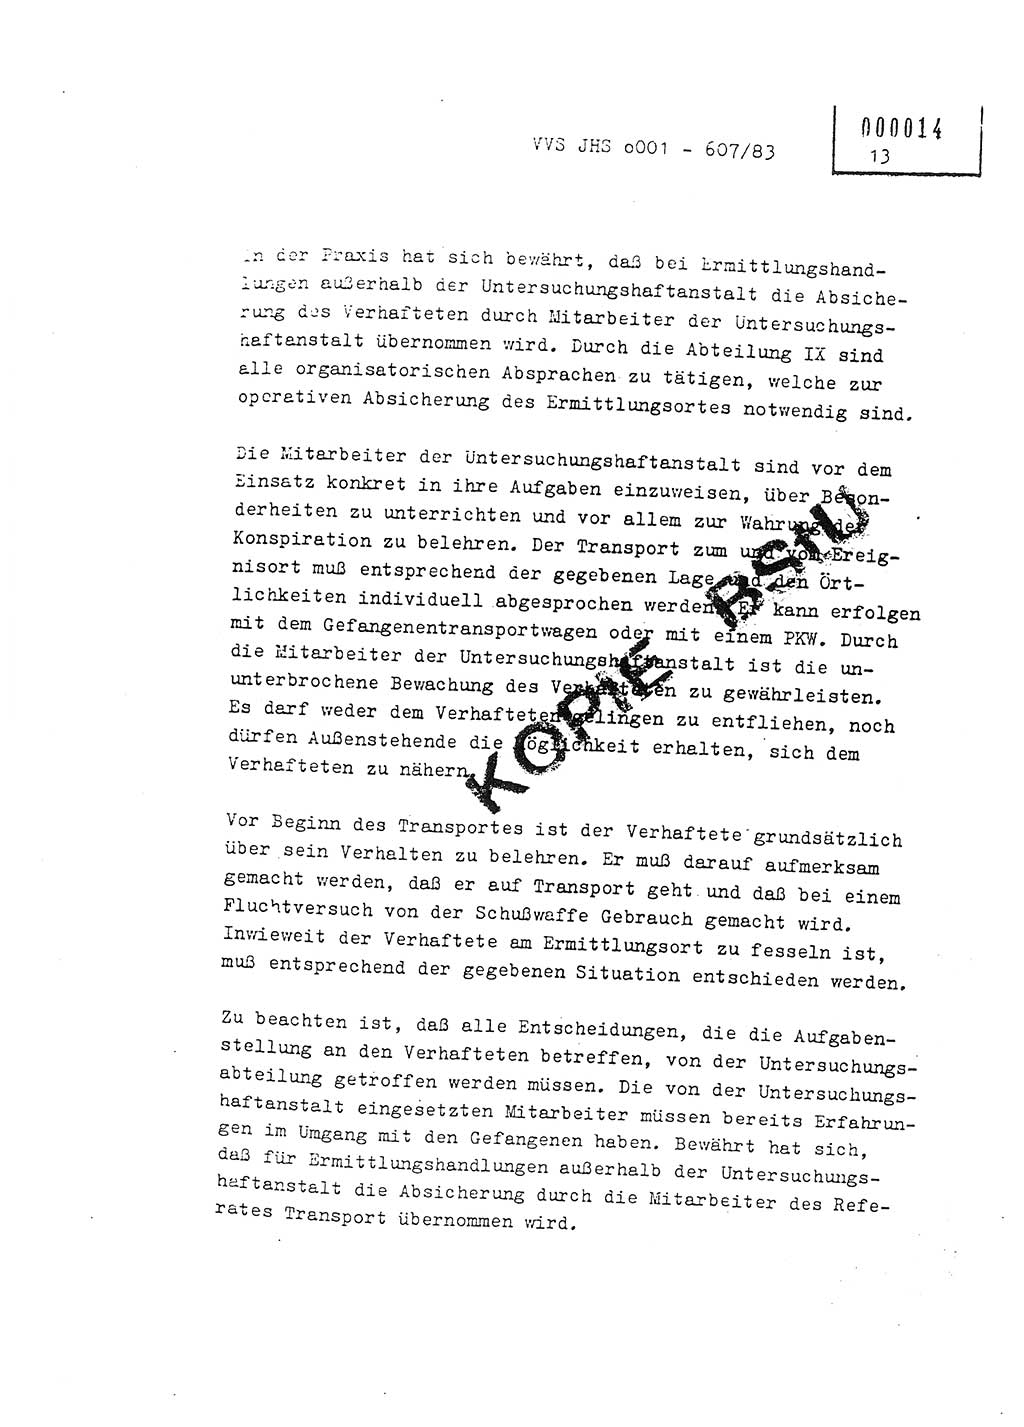 Fachschulabschlußarbeit Oberleutnant Hans-Joachim Saltmann (BV Rostock Abt. ⅩⅣ), Ministerium für Staatssicherheit (MfS) [Deutsche Demokratische Republik (DDR)], Juristische Hochschule (JHS), Vertrauliche Verschlußsache (VVS) o001-607/83, Potsdam 1983, Seite 13 (FS-Abschl.-Arb. MfS DDR JHS VVS o001-607/83 1983, S. 13)